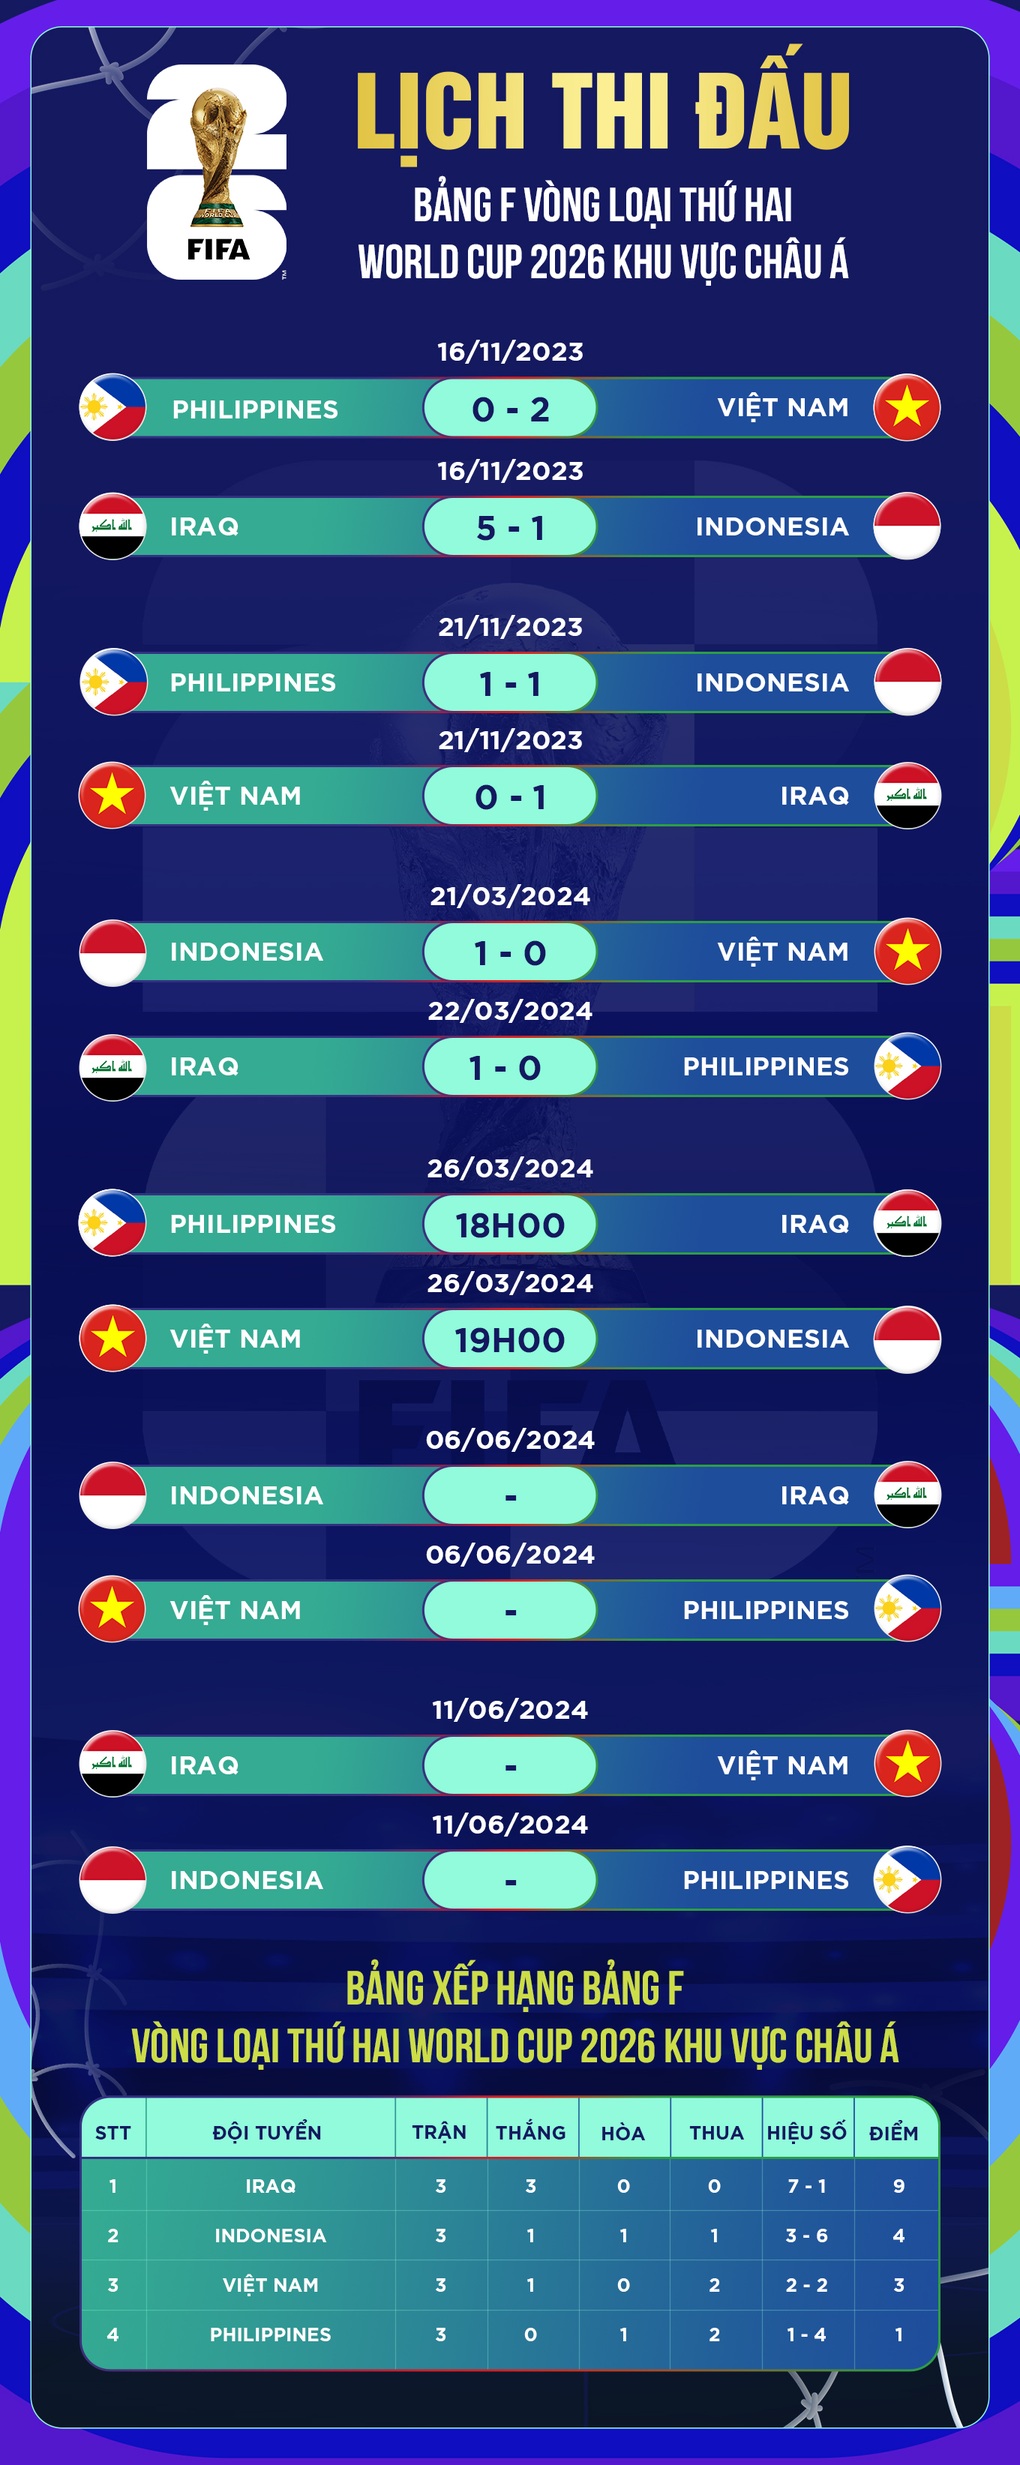 Vé xem trận đội tuyển Việt Nam - Indonesia tại Mỹ Đình ngày 26/3 ế ẩm-6